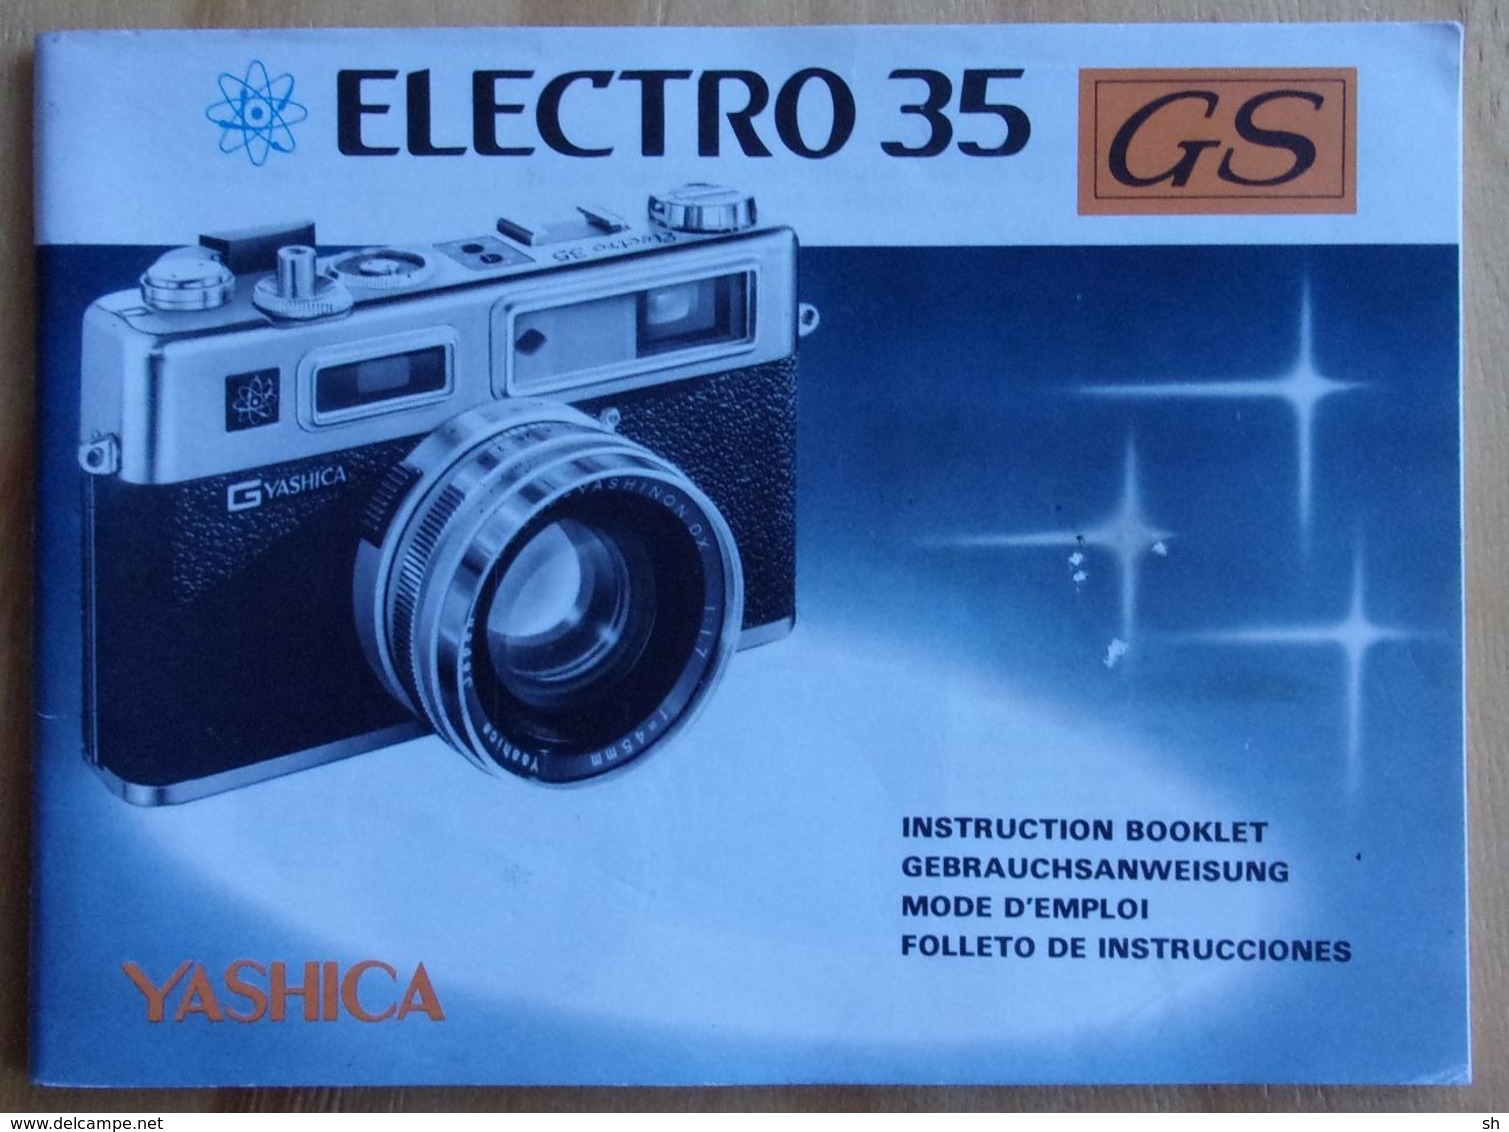 YASHICA - ELECTRO 35 GS - Manuel D'utilisation - Instruction Booklet - Gebruiksaanwijzing - Foto - Photo - Matériel Et Accessoires